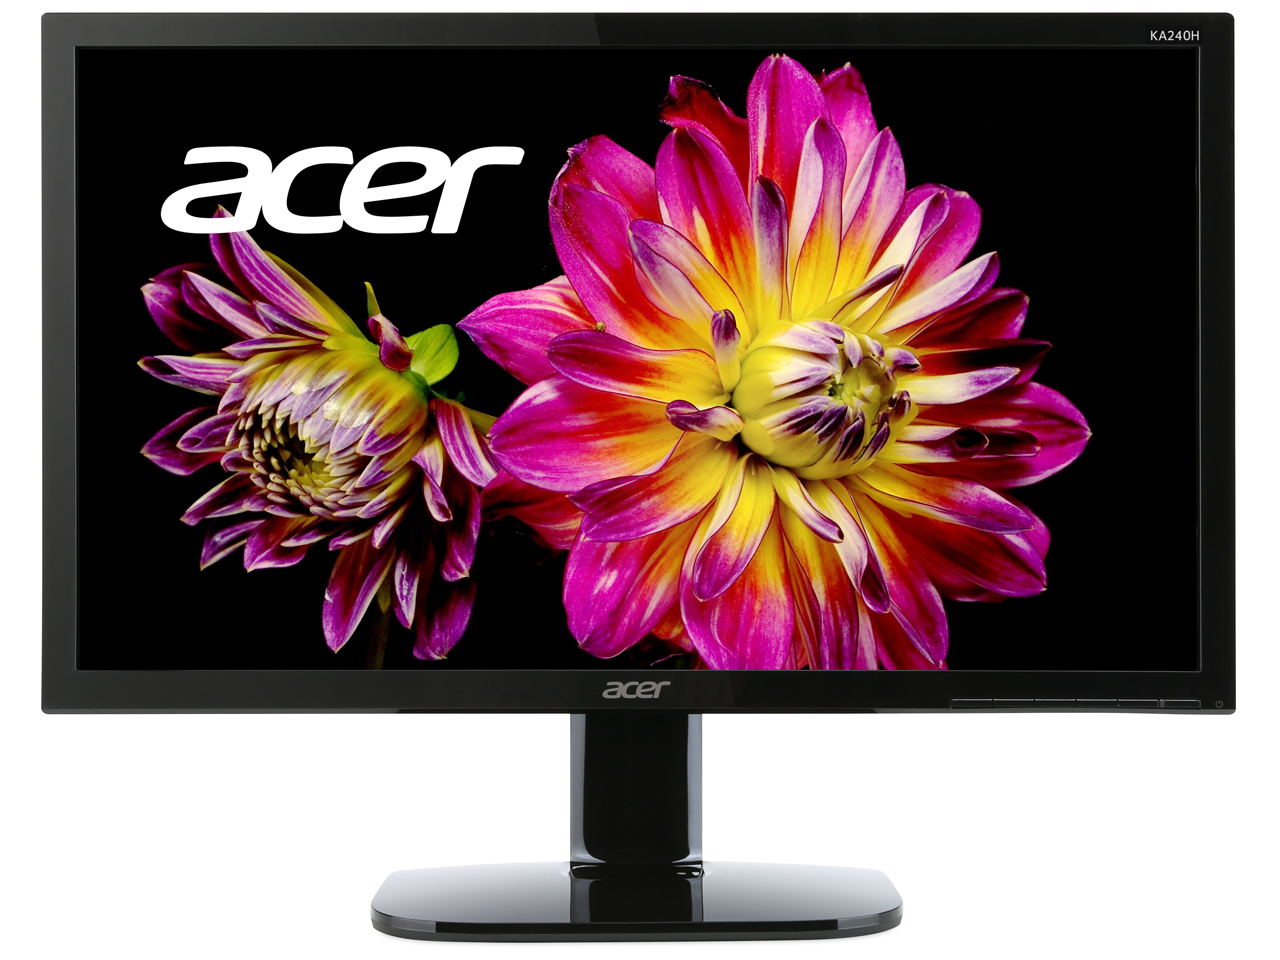 Acer KA240Hbmidx 24インチ 液晶モニター 液晶ディスプレイ - ディスプレイ